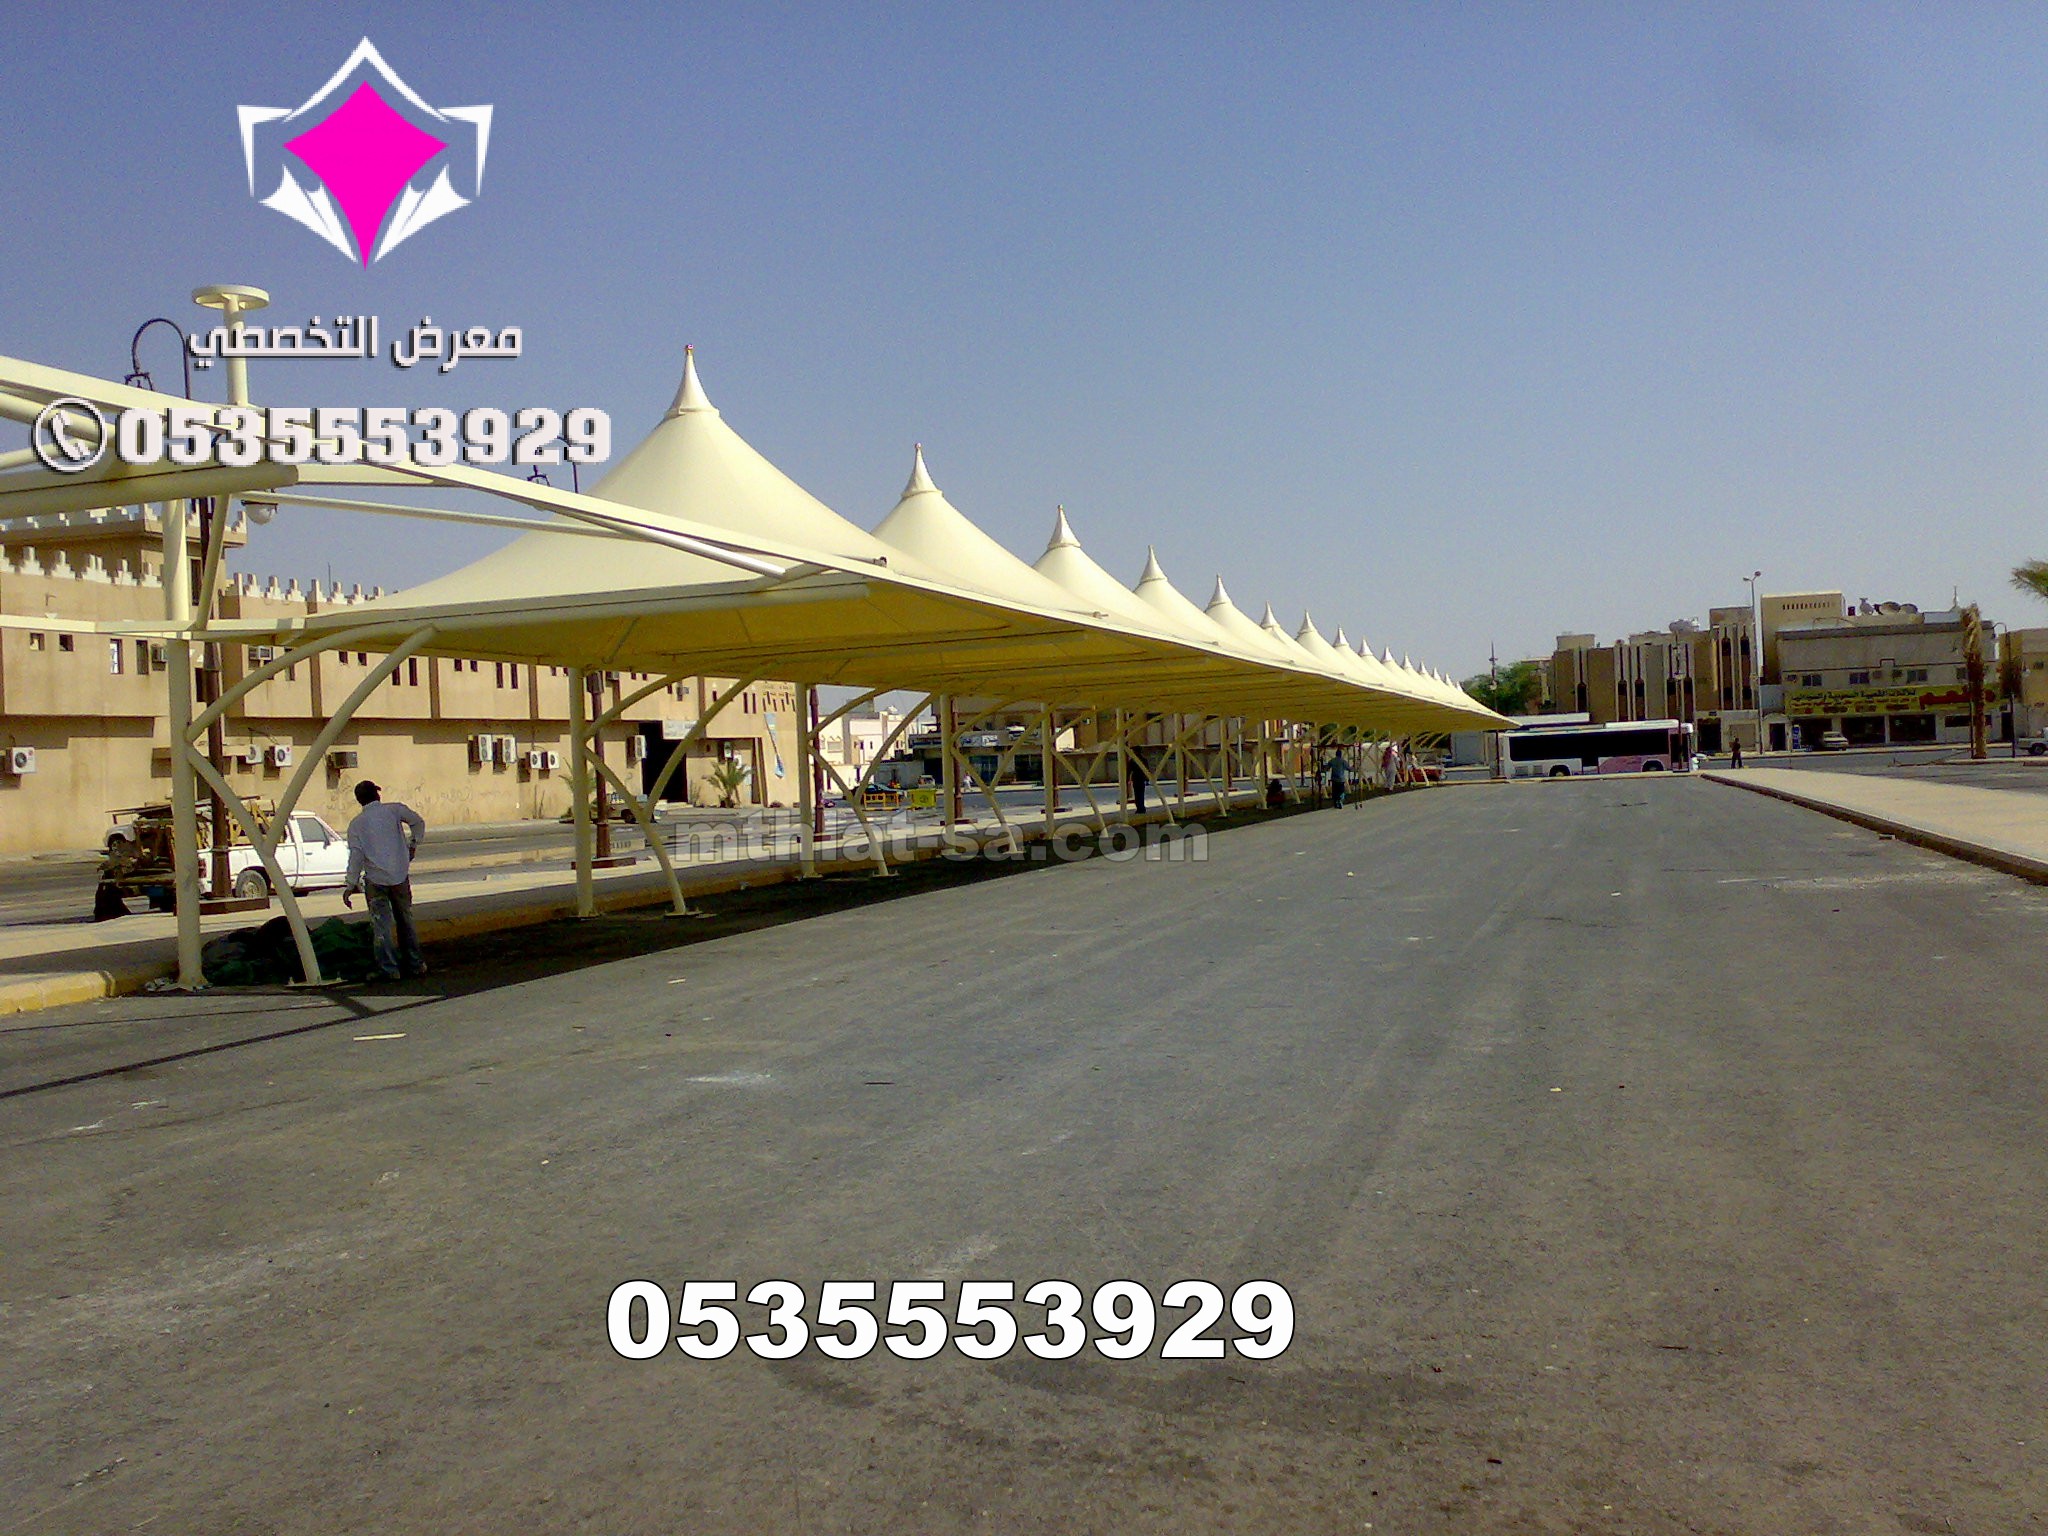 مظلات وسواتر الإختيار الأول هي مؤسسة رسمية مقرها الرياض تقدم خدمات تركيب افضل اعمال مظلات السيارات بكافة انواعها الخاصة والعامة المشاريع 05005596